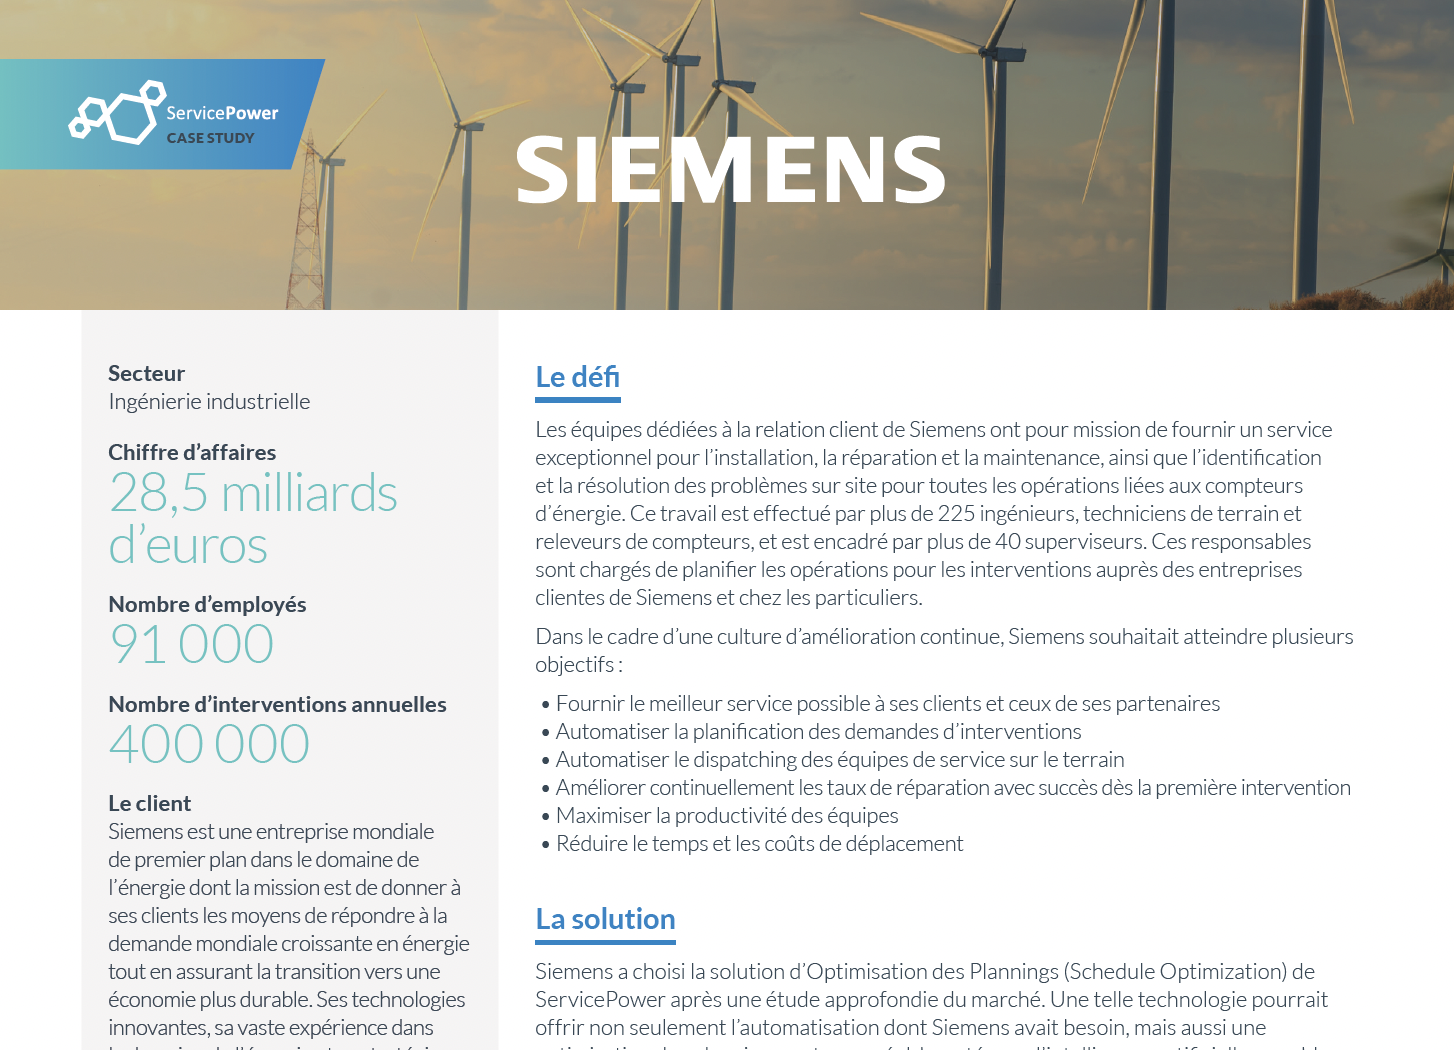 Siemens améliore la productivité de ses équipes et la satisfaction de ses clients